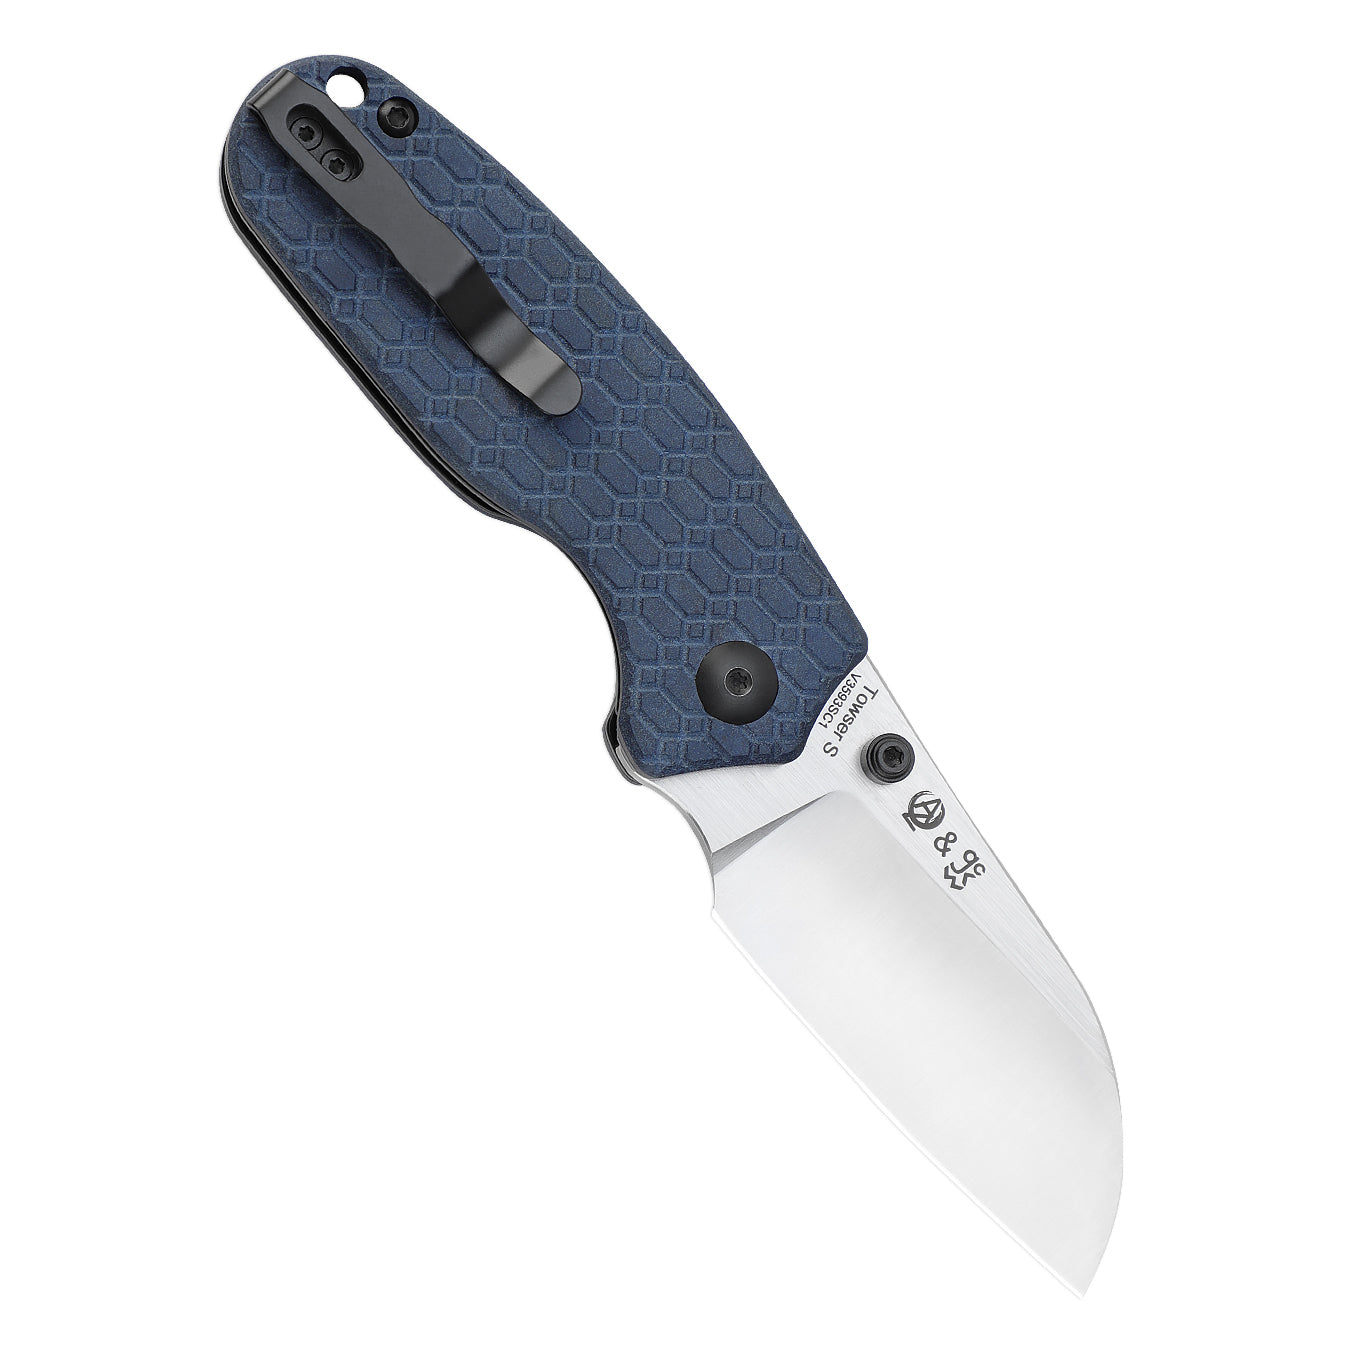 Kizer Towser S 2.85" 154CM Blue Richlite Folding Knife V3593SC1